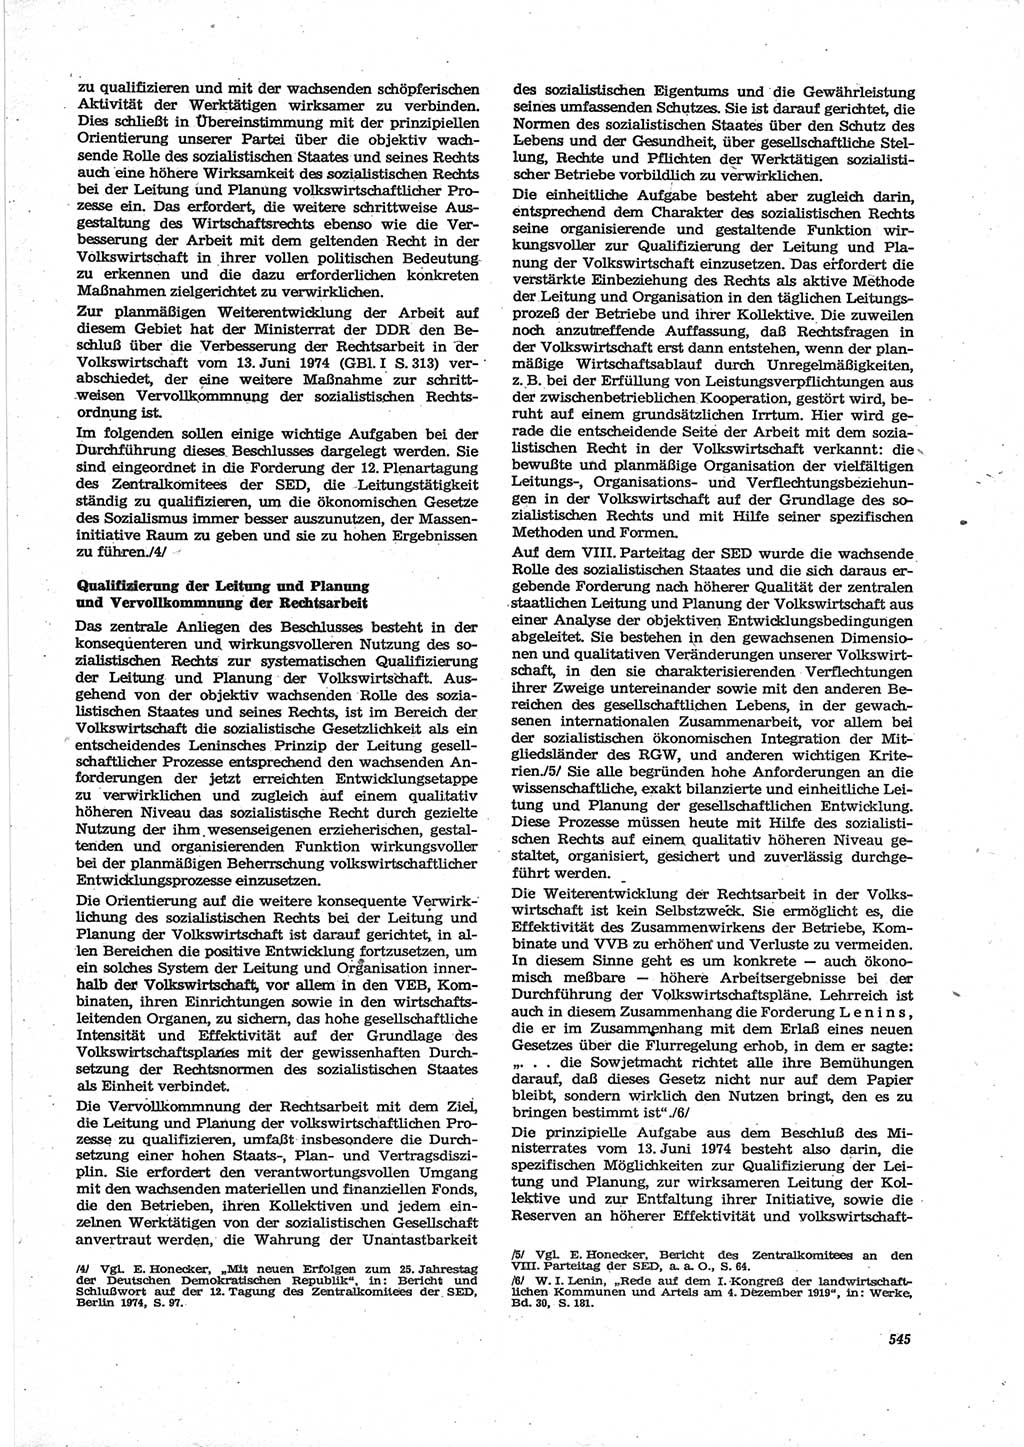 Neue Justiz (NJ), Zeitschrift für Recht und Rechtswissenschaft [Deutsche Demokratische Republik (DDR)], 28. Jahrgang 1974, Seite 545 (NJ DDR 1974, S. 545)